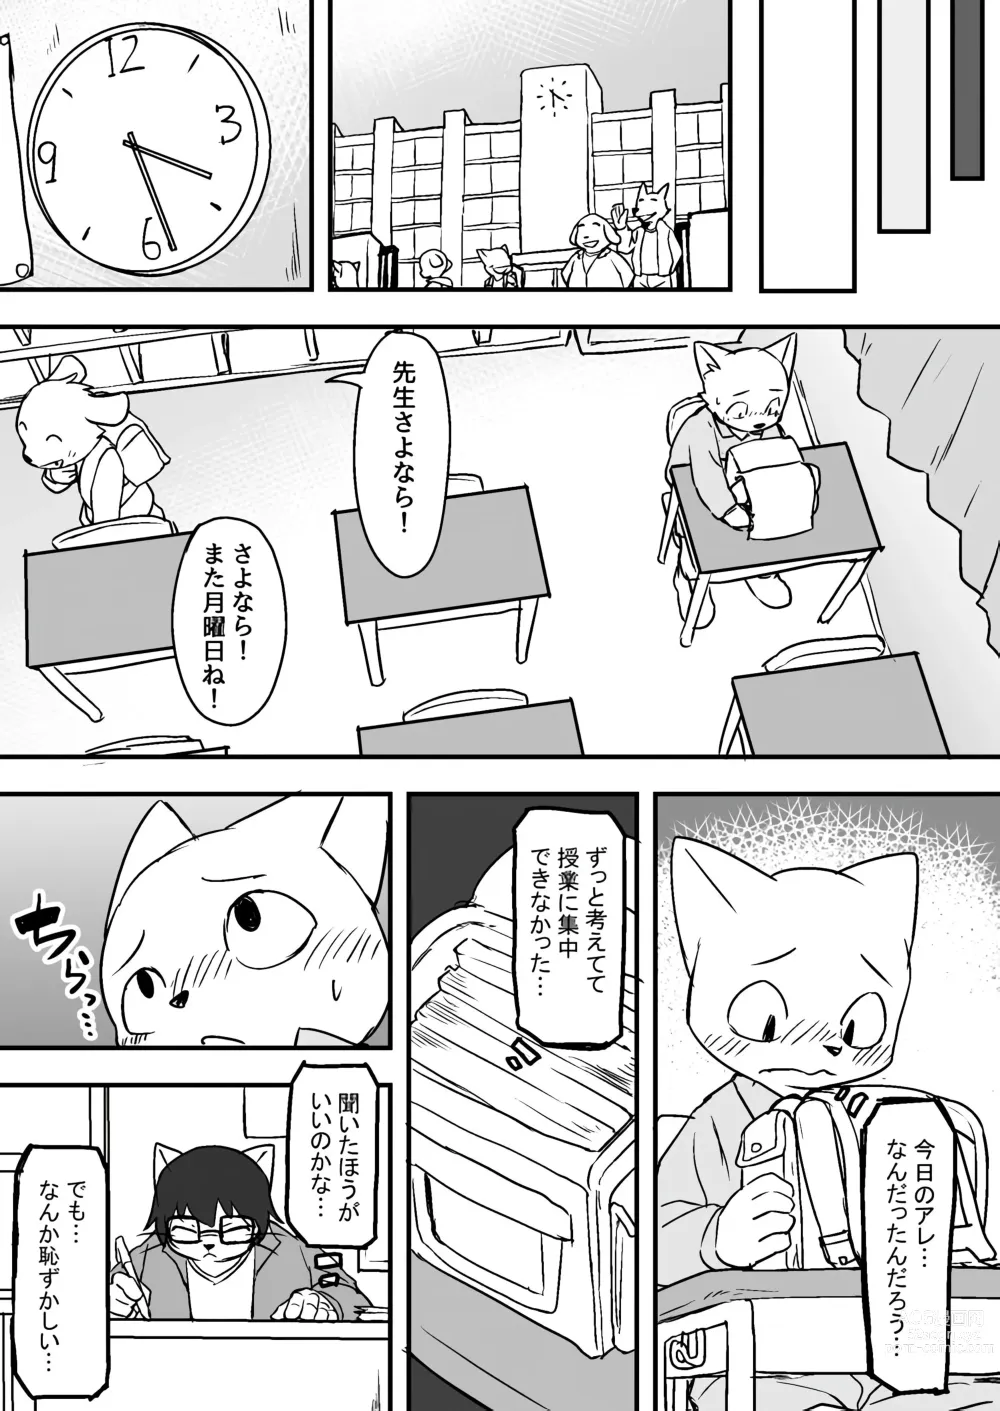 Page 9 of doujinshi Manmosu Marimo - Sensei Story #1